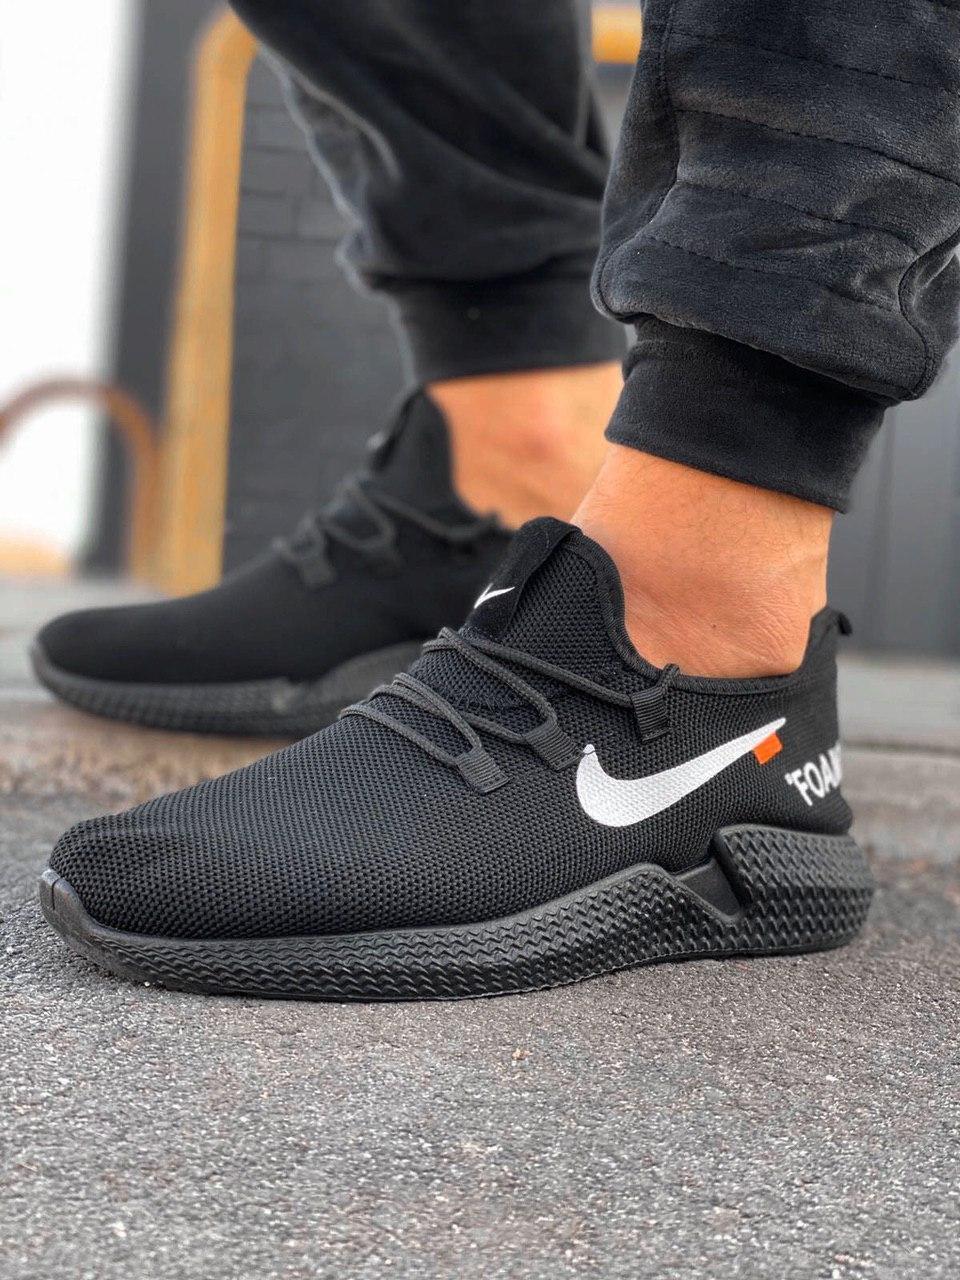 Мужские кроссовки Nike Foam черные: 270 грн. - Спортивная обувь Желтые Воды  на BESPLATKA.ua 93739158